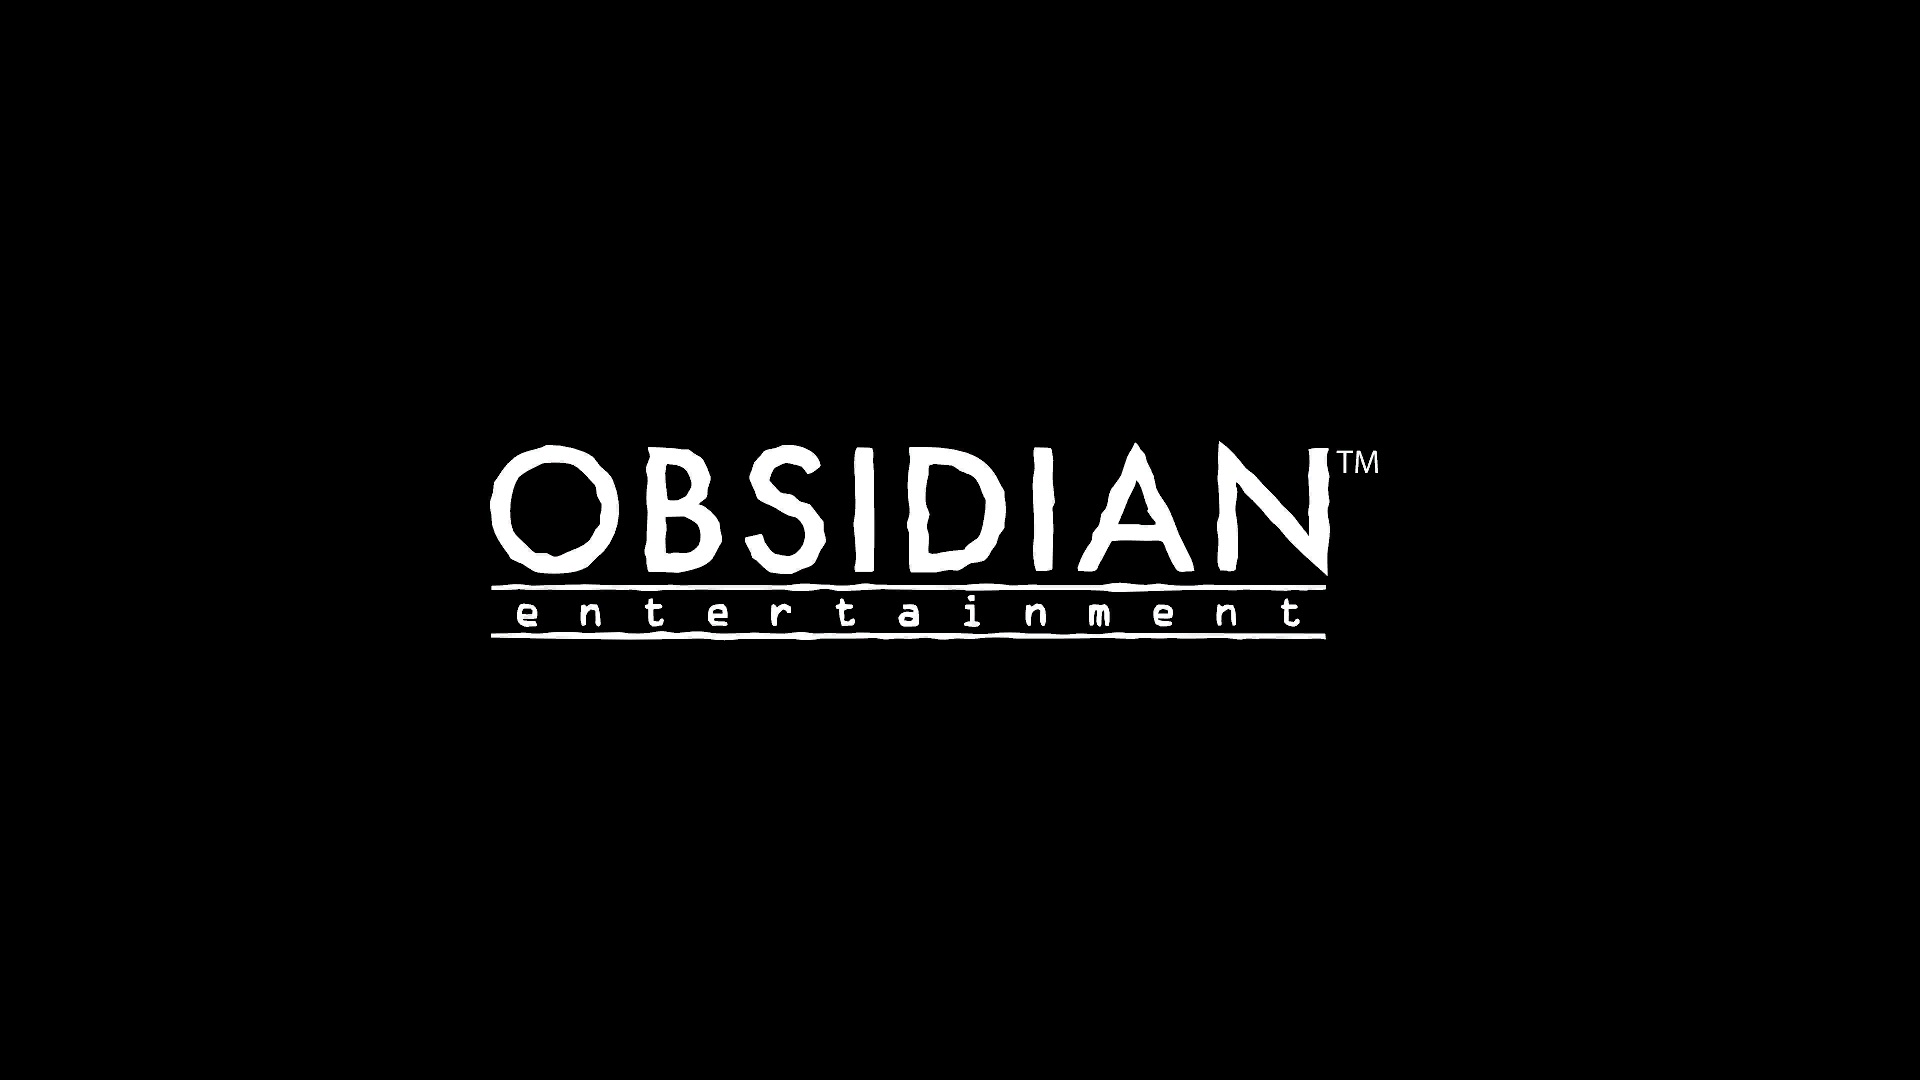 Idanilaraya Obsidian